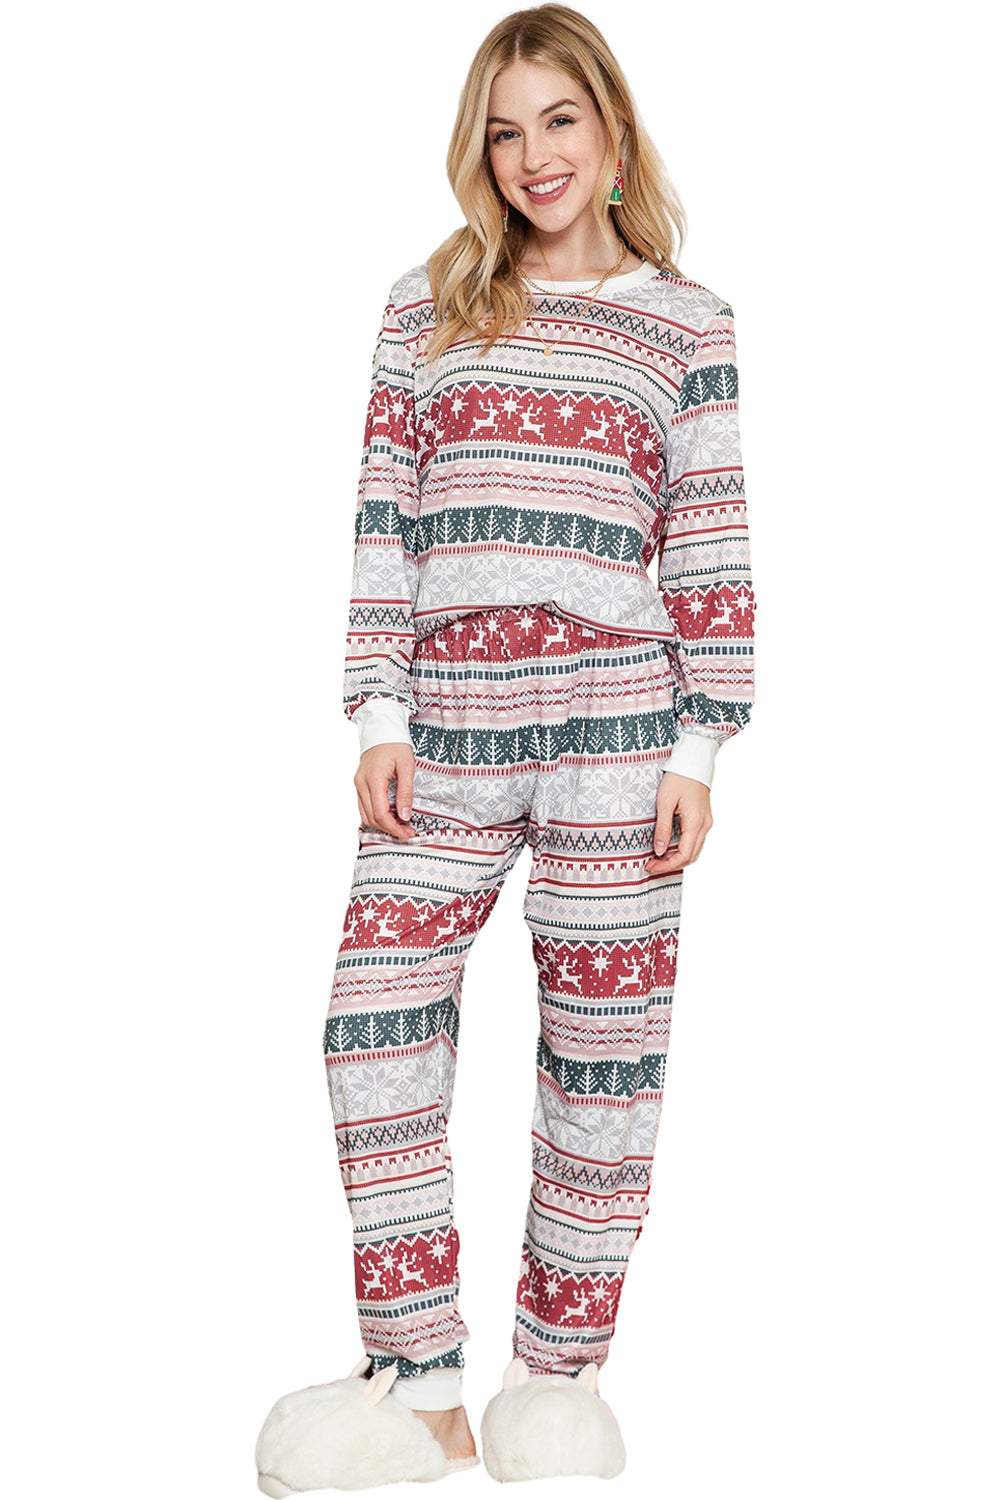 Gray Christmas Printed Long Sleeve Top & Pants Pajamas Set